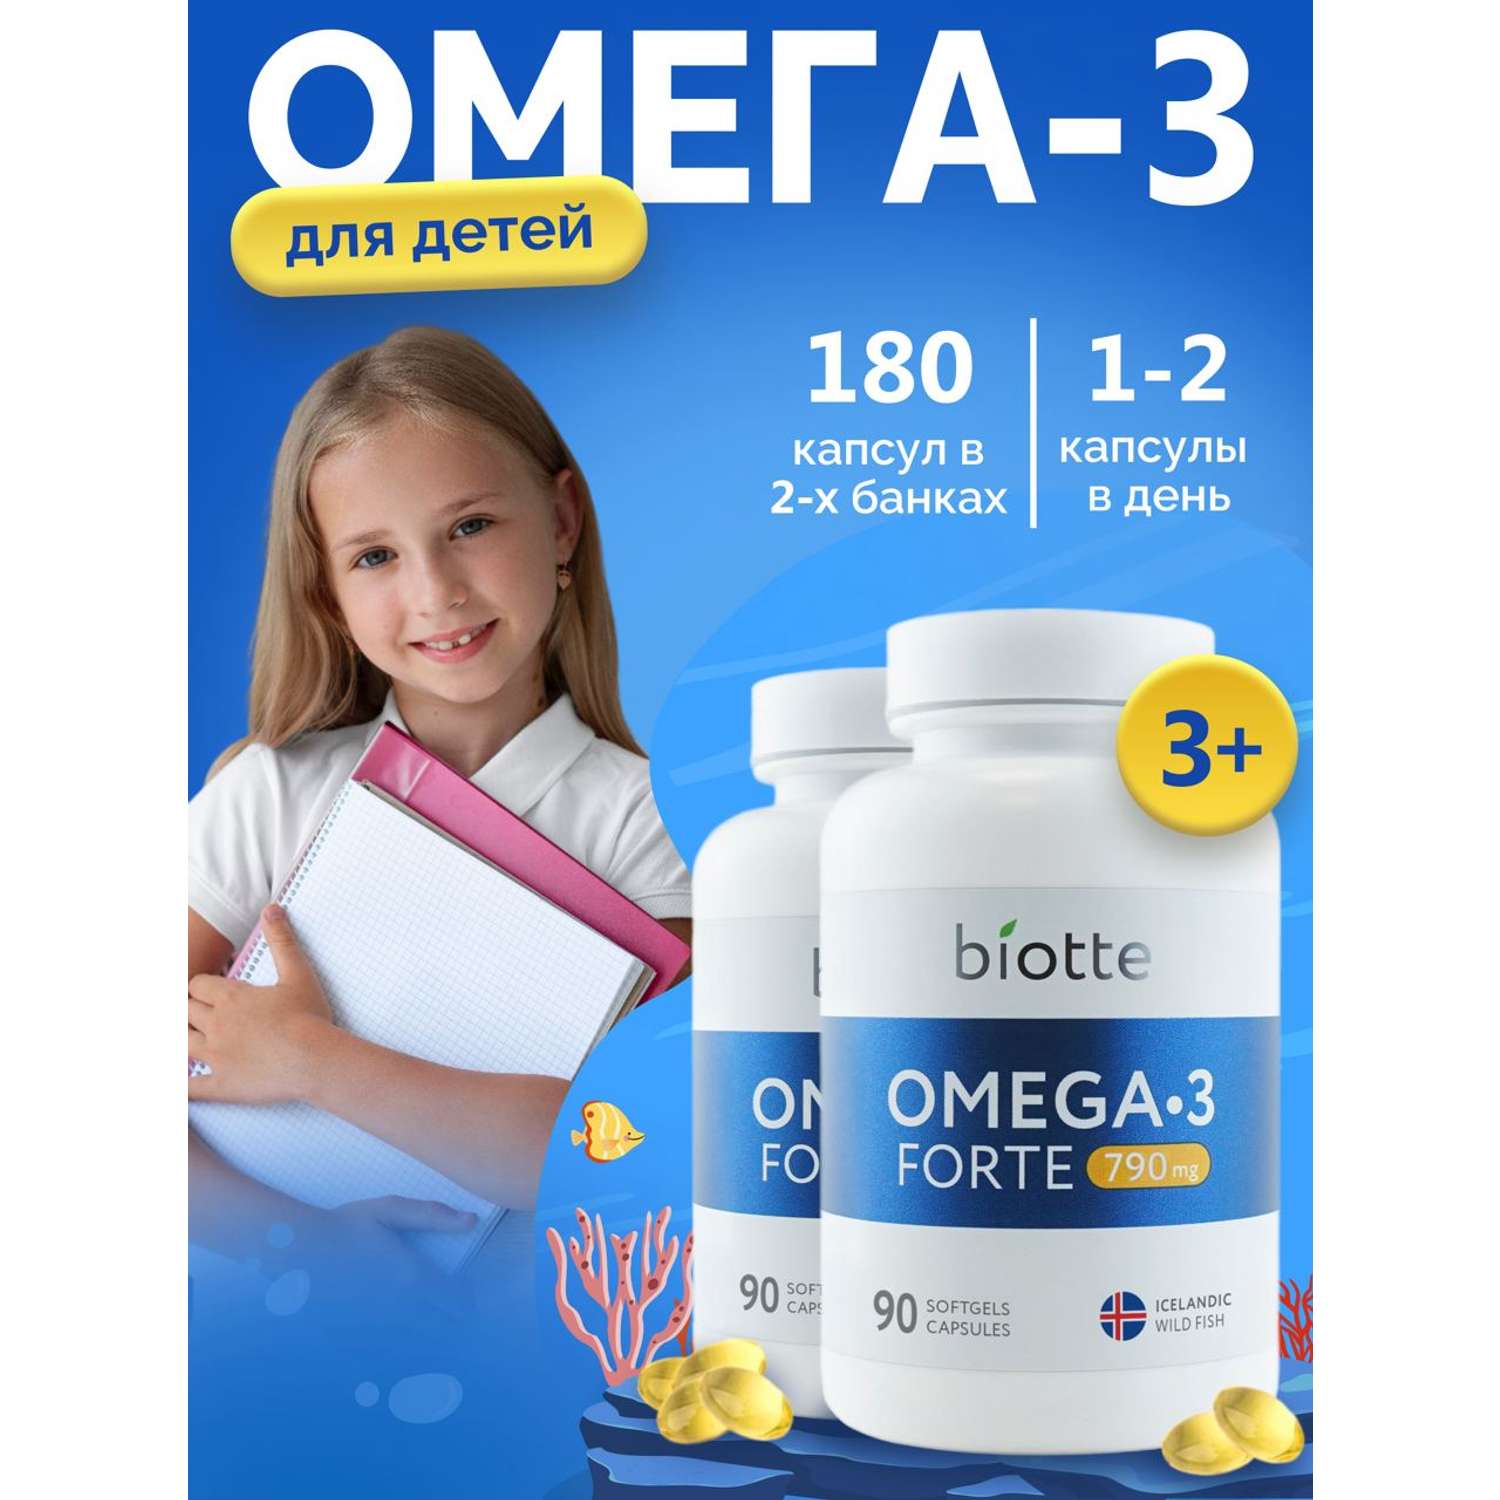 Омега 3 форте BIOTTE 790 mg fish oil премиум рыбий жир для детей подростков взрослых 180 капсул - фото 1